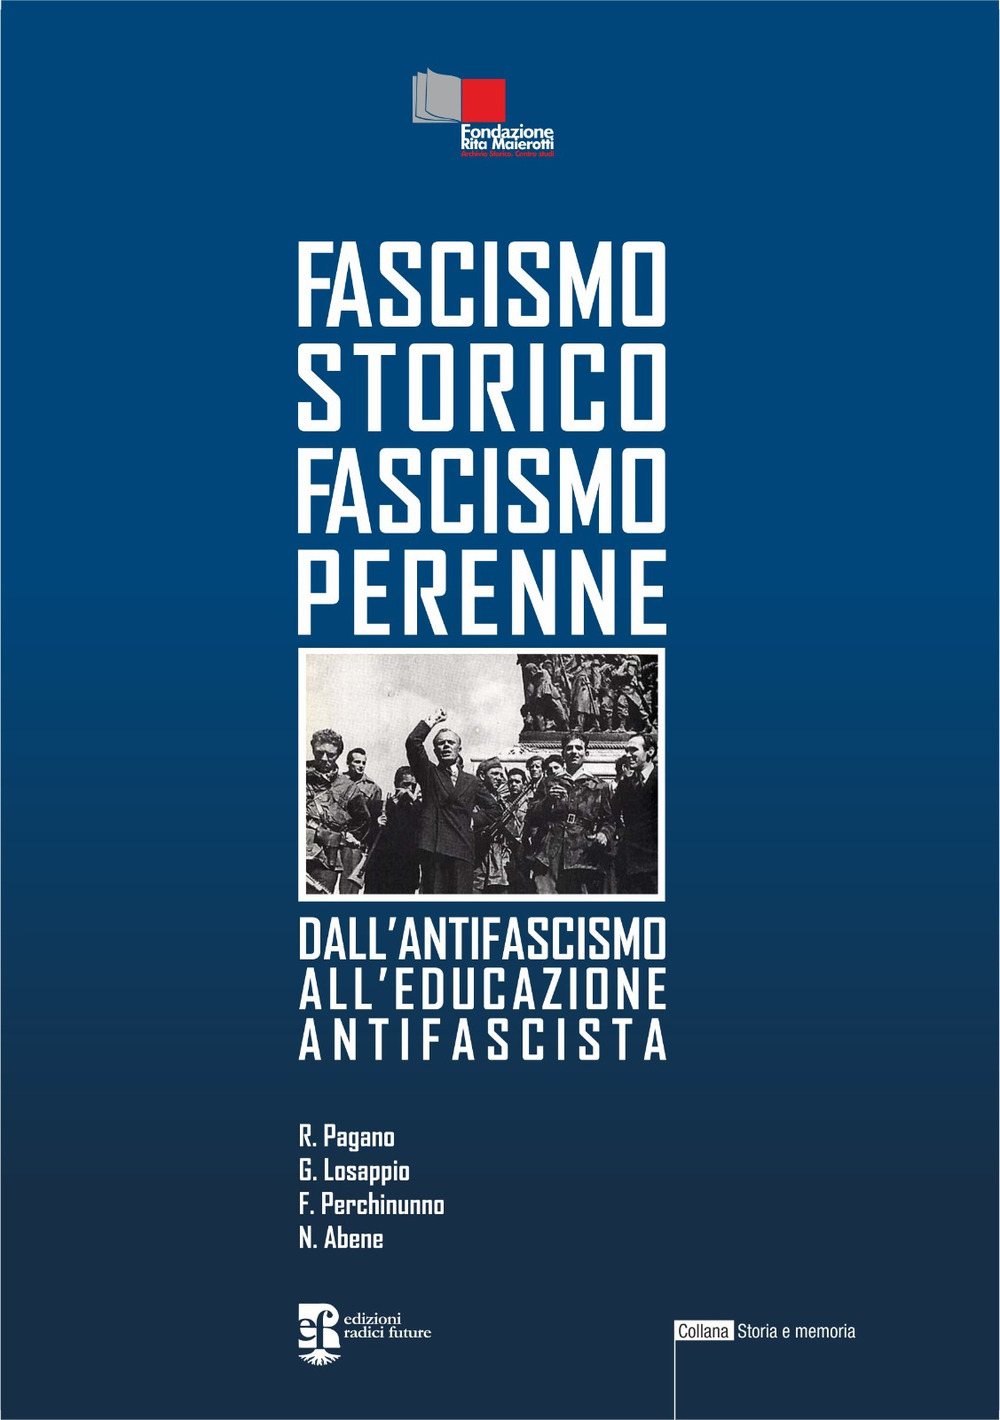 Fascismo storico fascismo perenne. Dall'antifascismo all'educazione antifascista